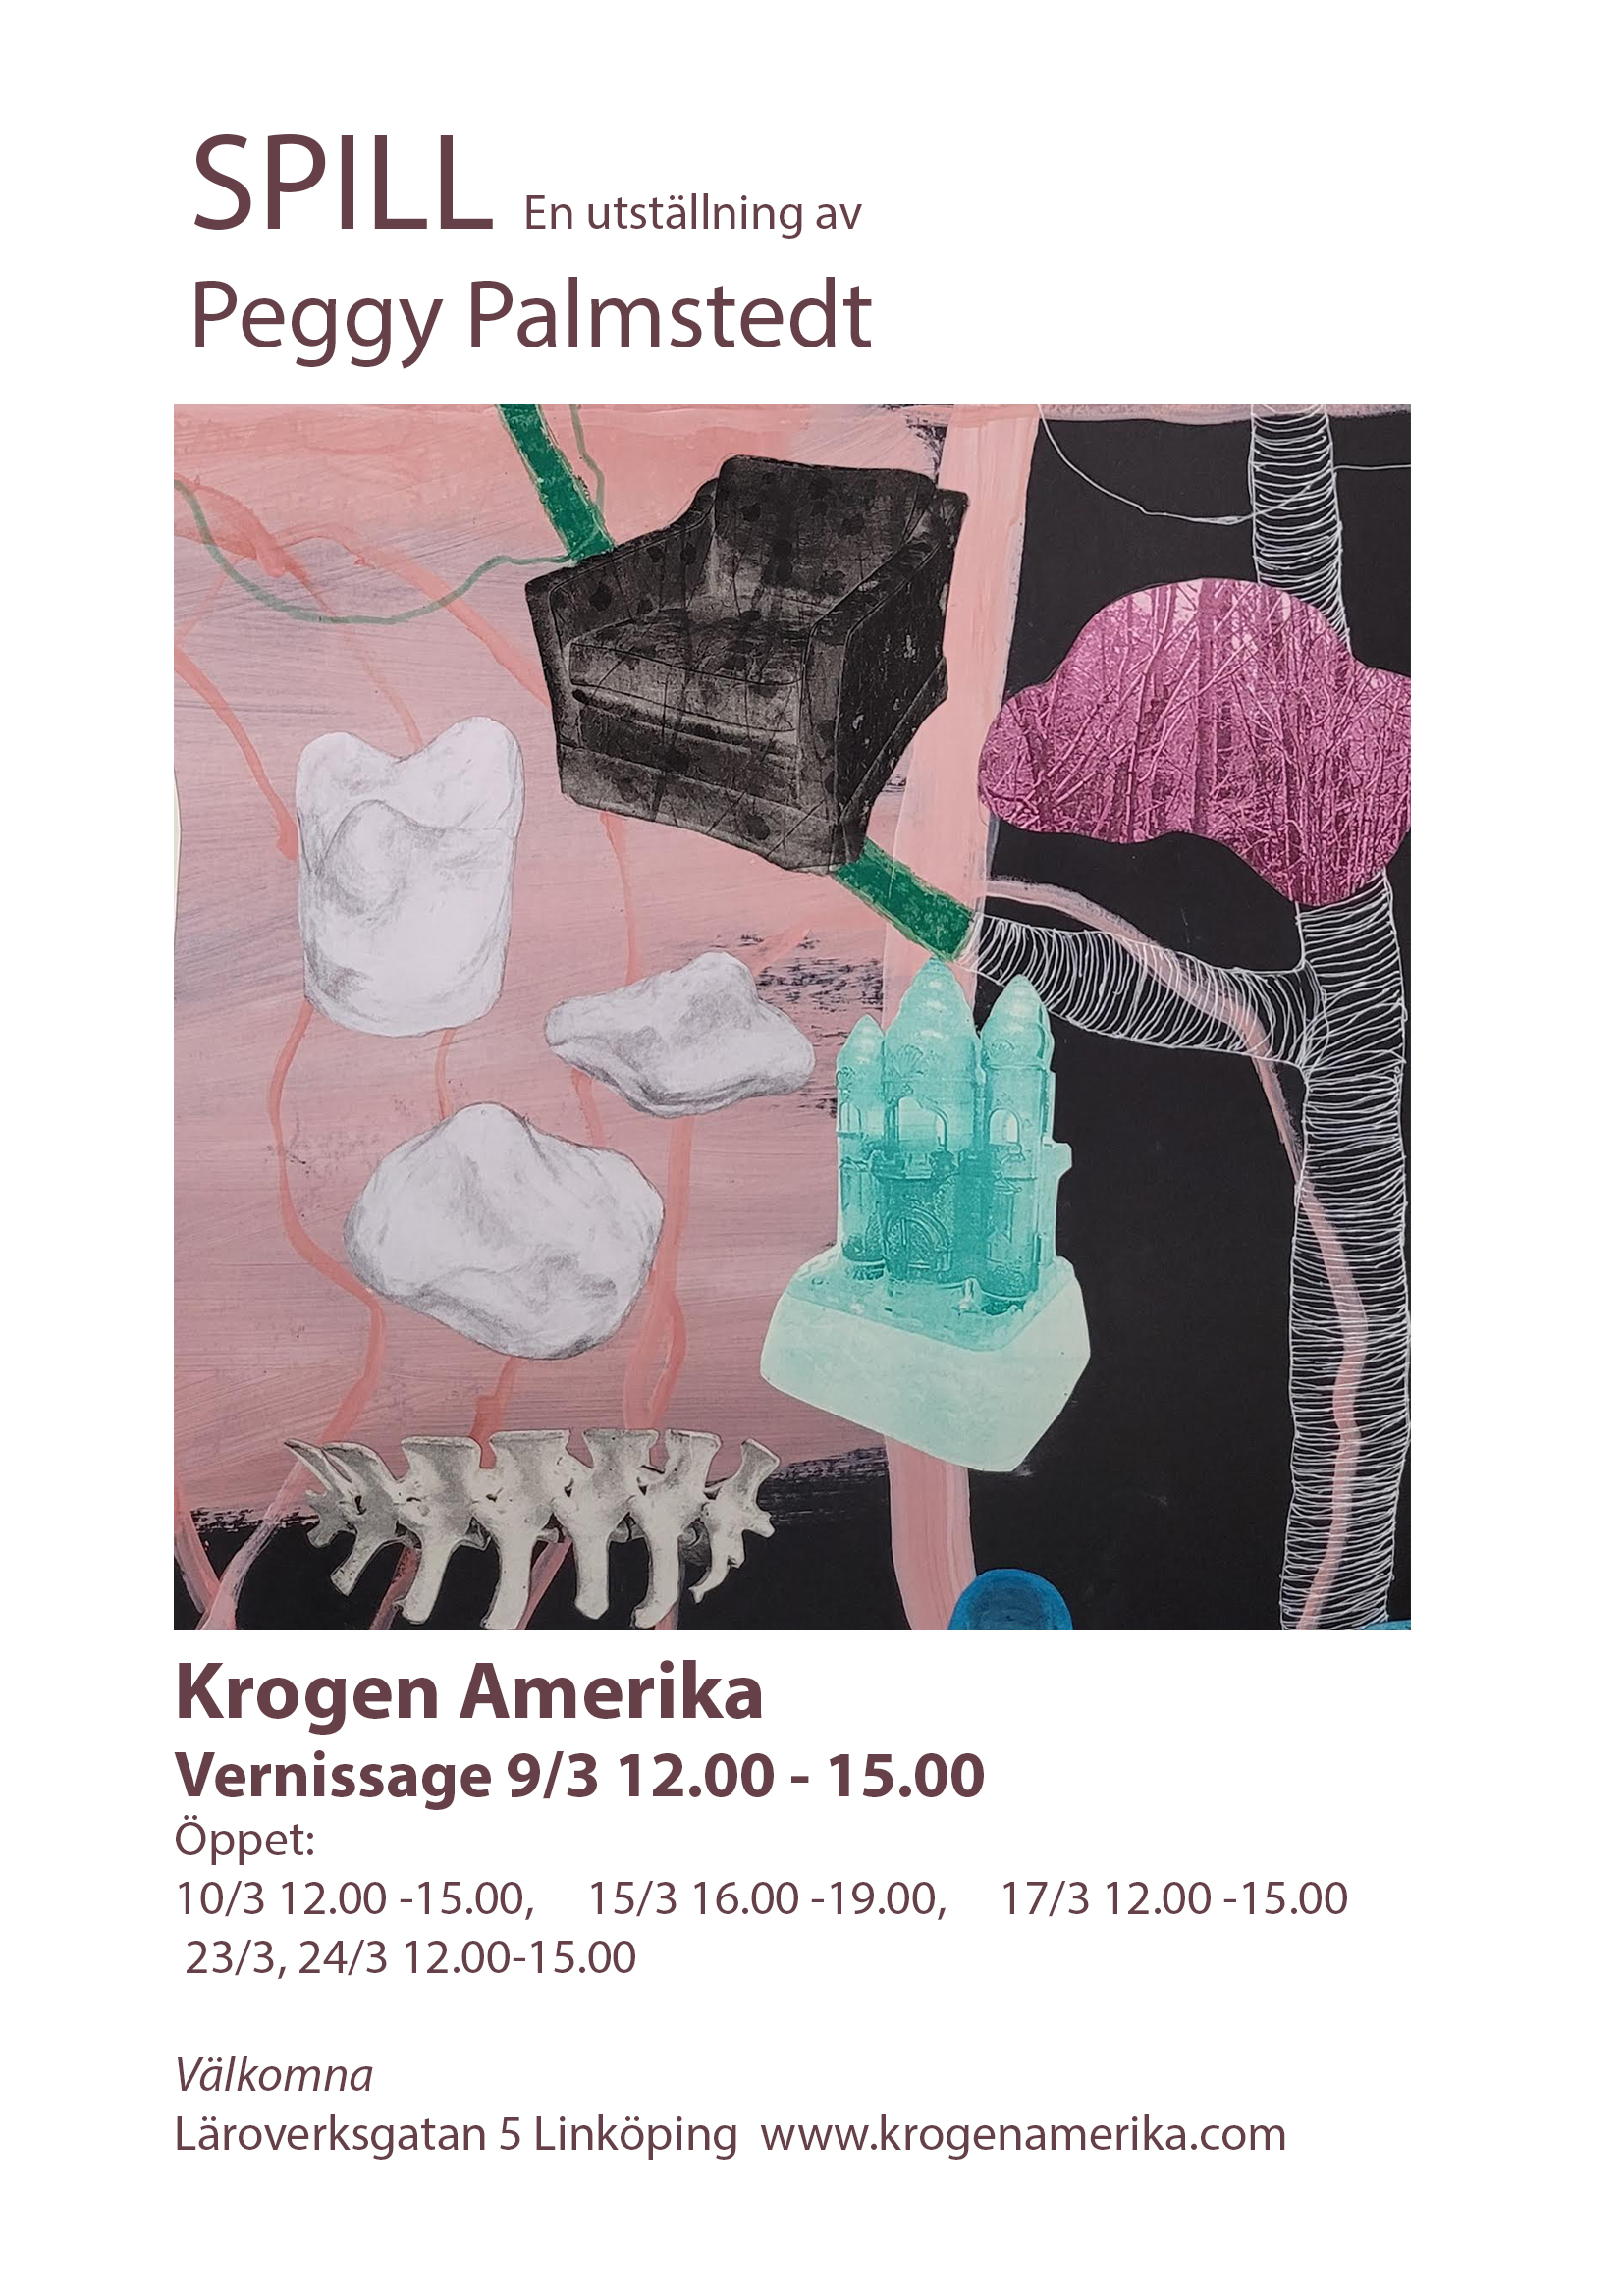 Välkomna till Krogen Amerika och Peggy Palmstedts utställning 'SPILL'. Vernissage Lördagen den 9/3 kl 12.00 - 15.00